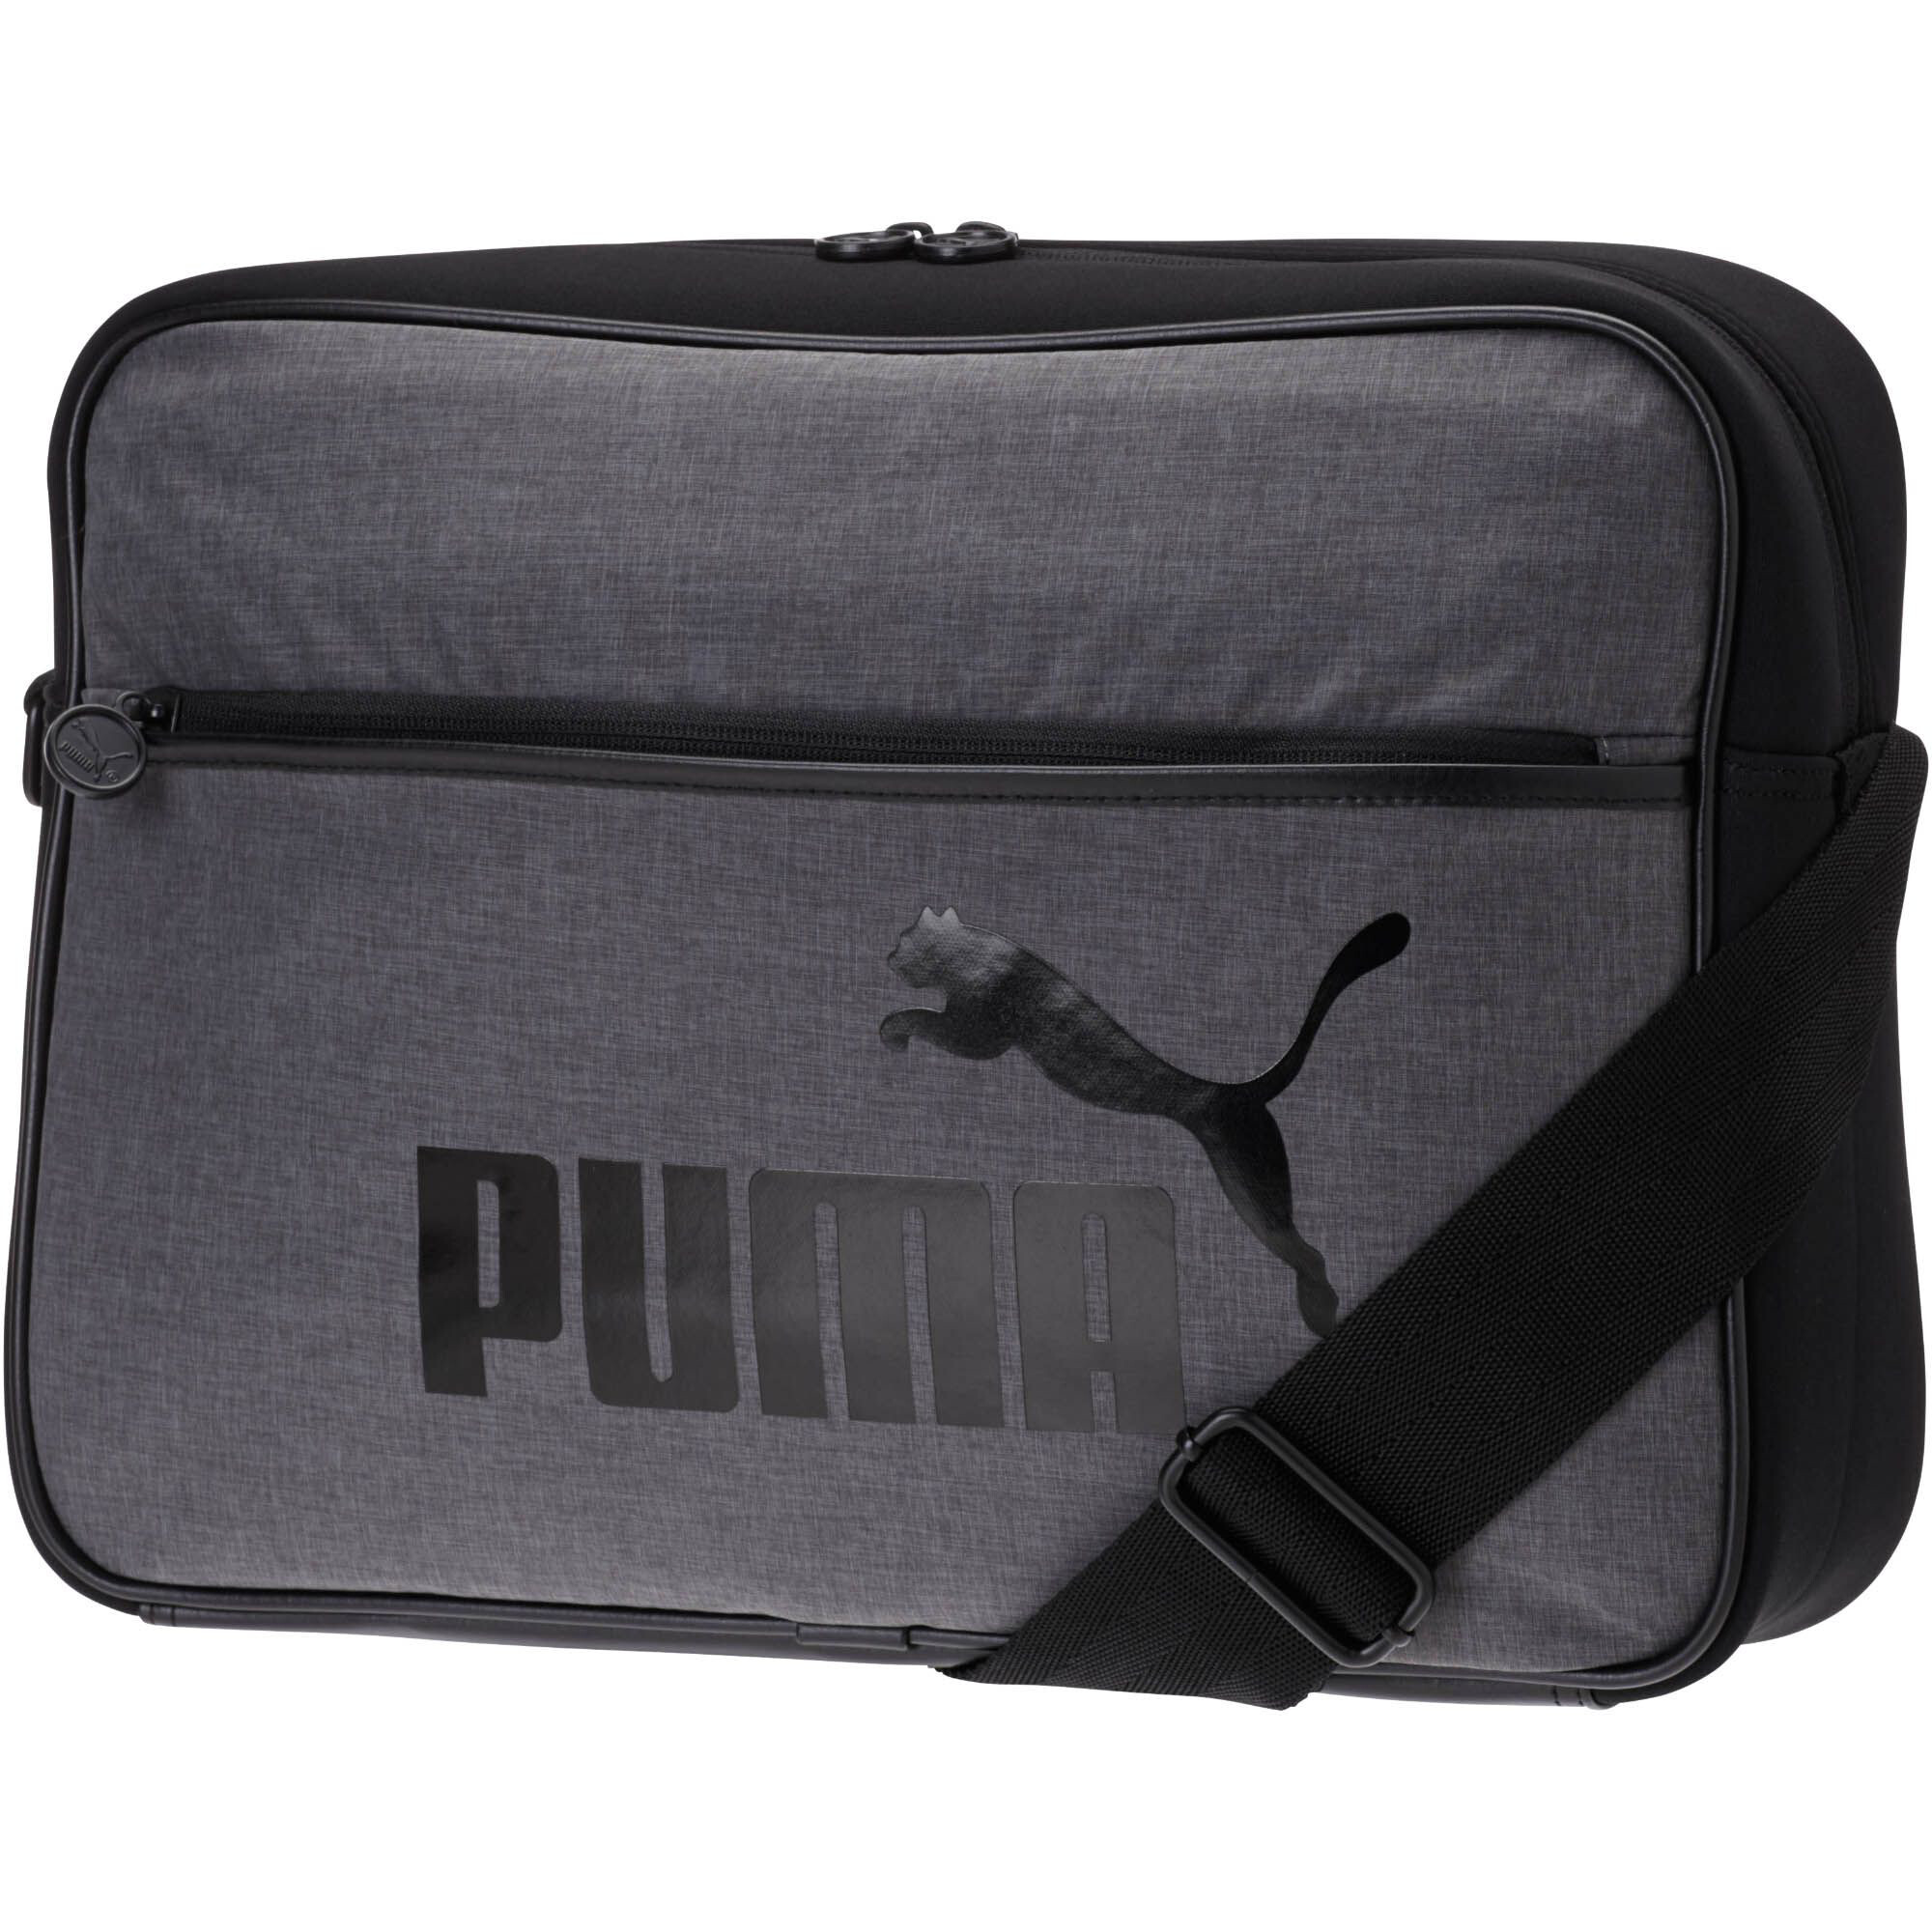 puma messenger bags